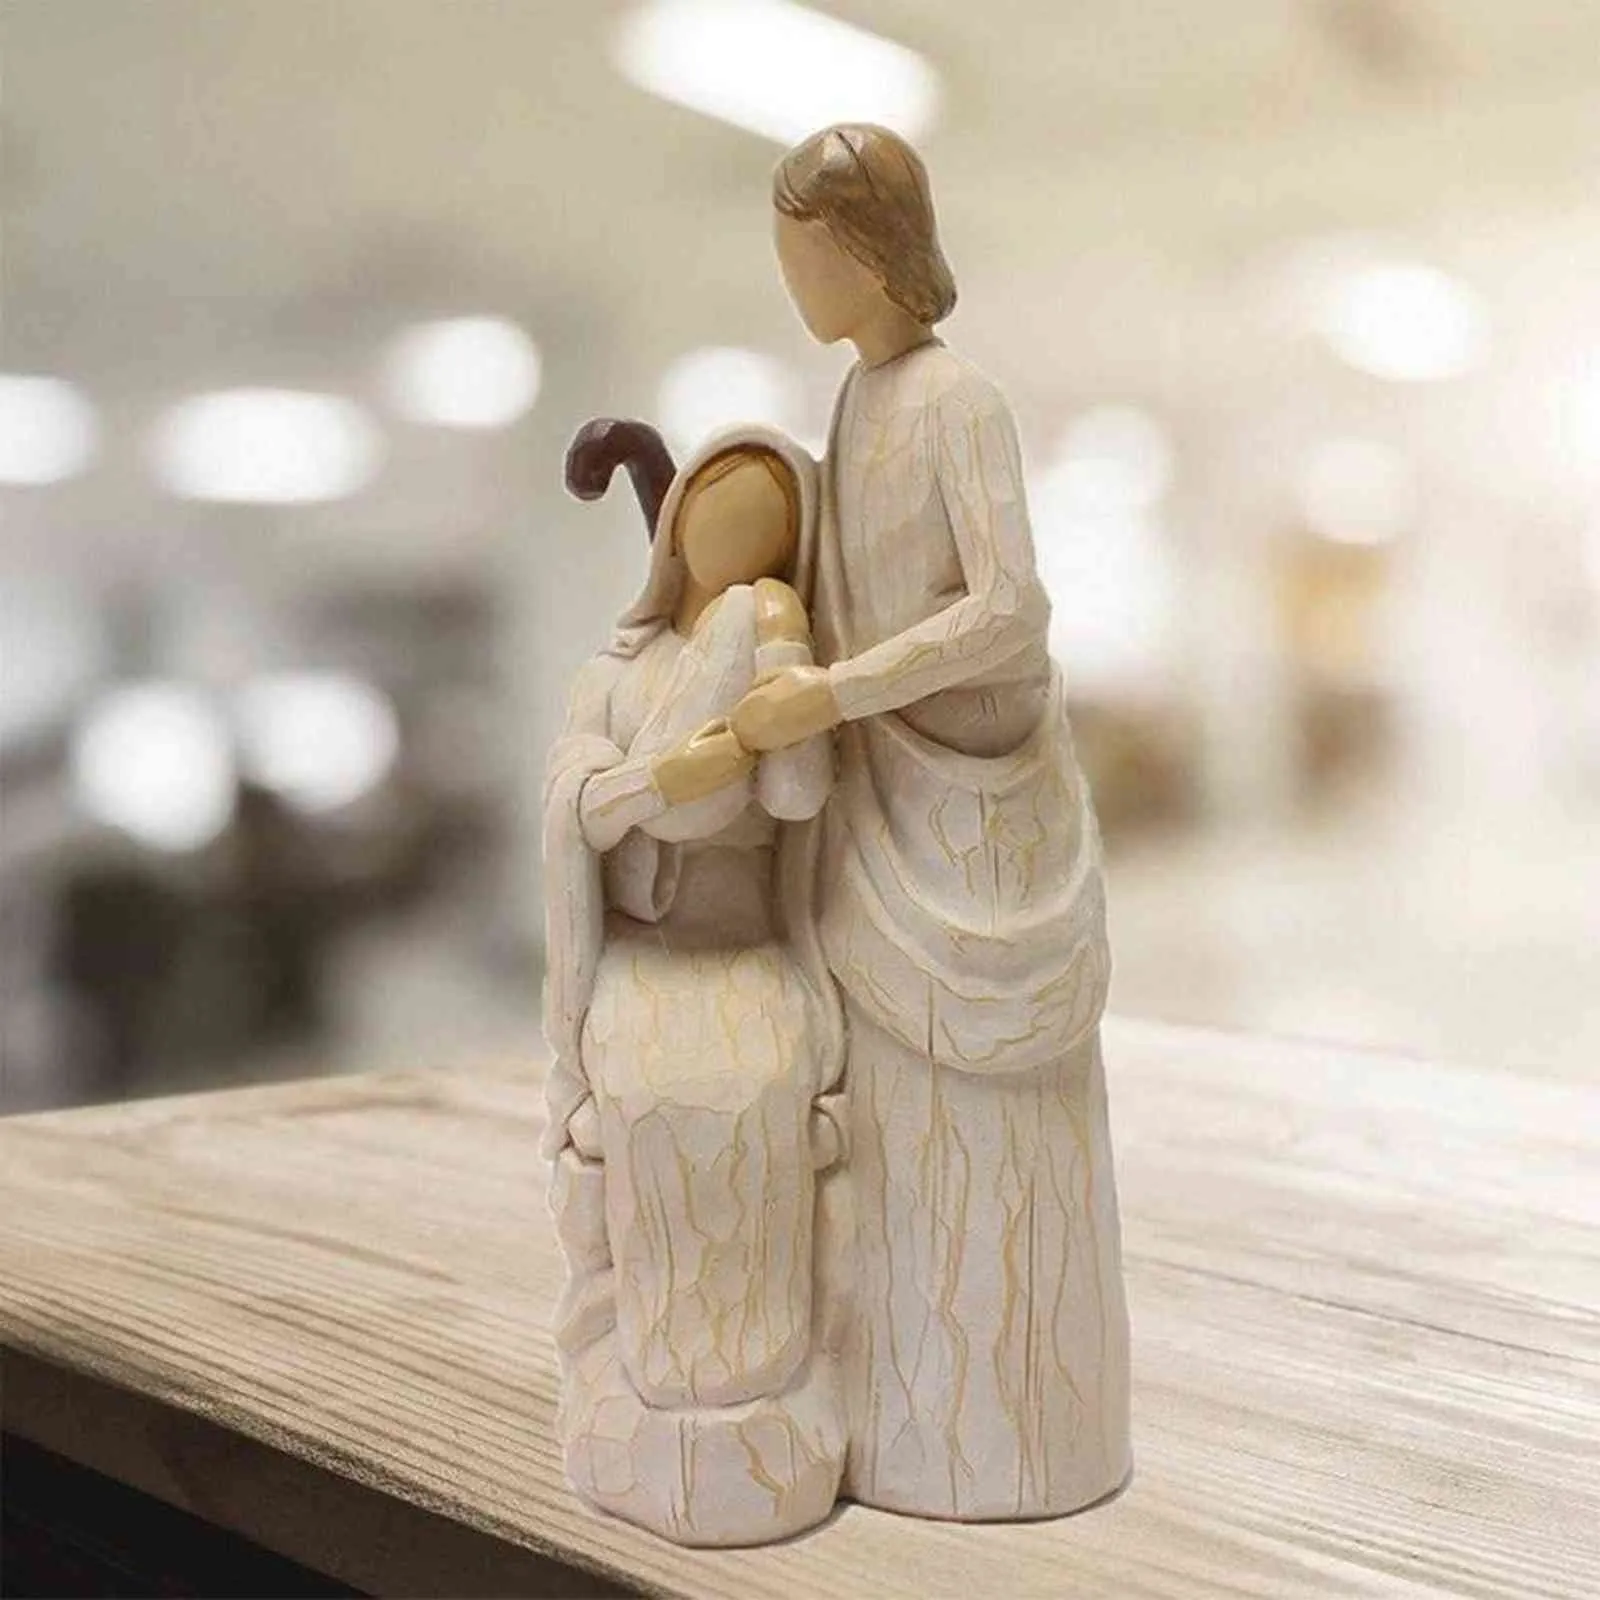 Figurina religiosa statue familiare santa Gesù Mary Joseph Catholic Home Decor Ornamenti la presepe Scena regalo di Natale 211108